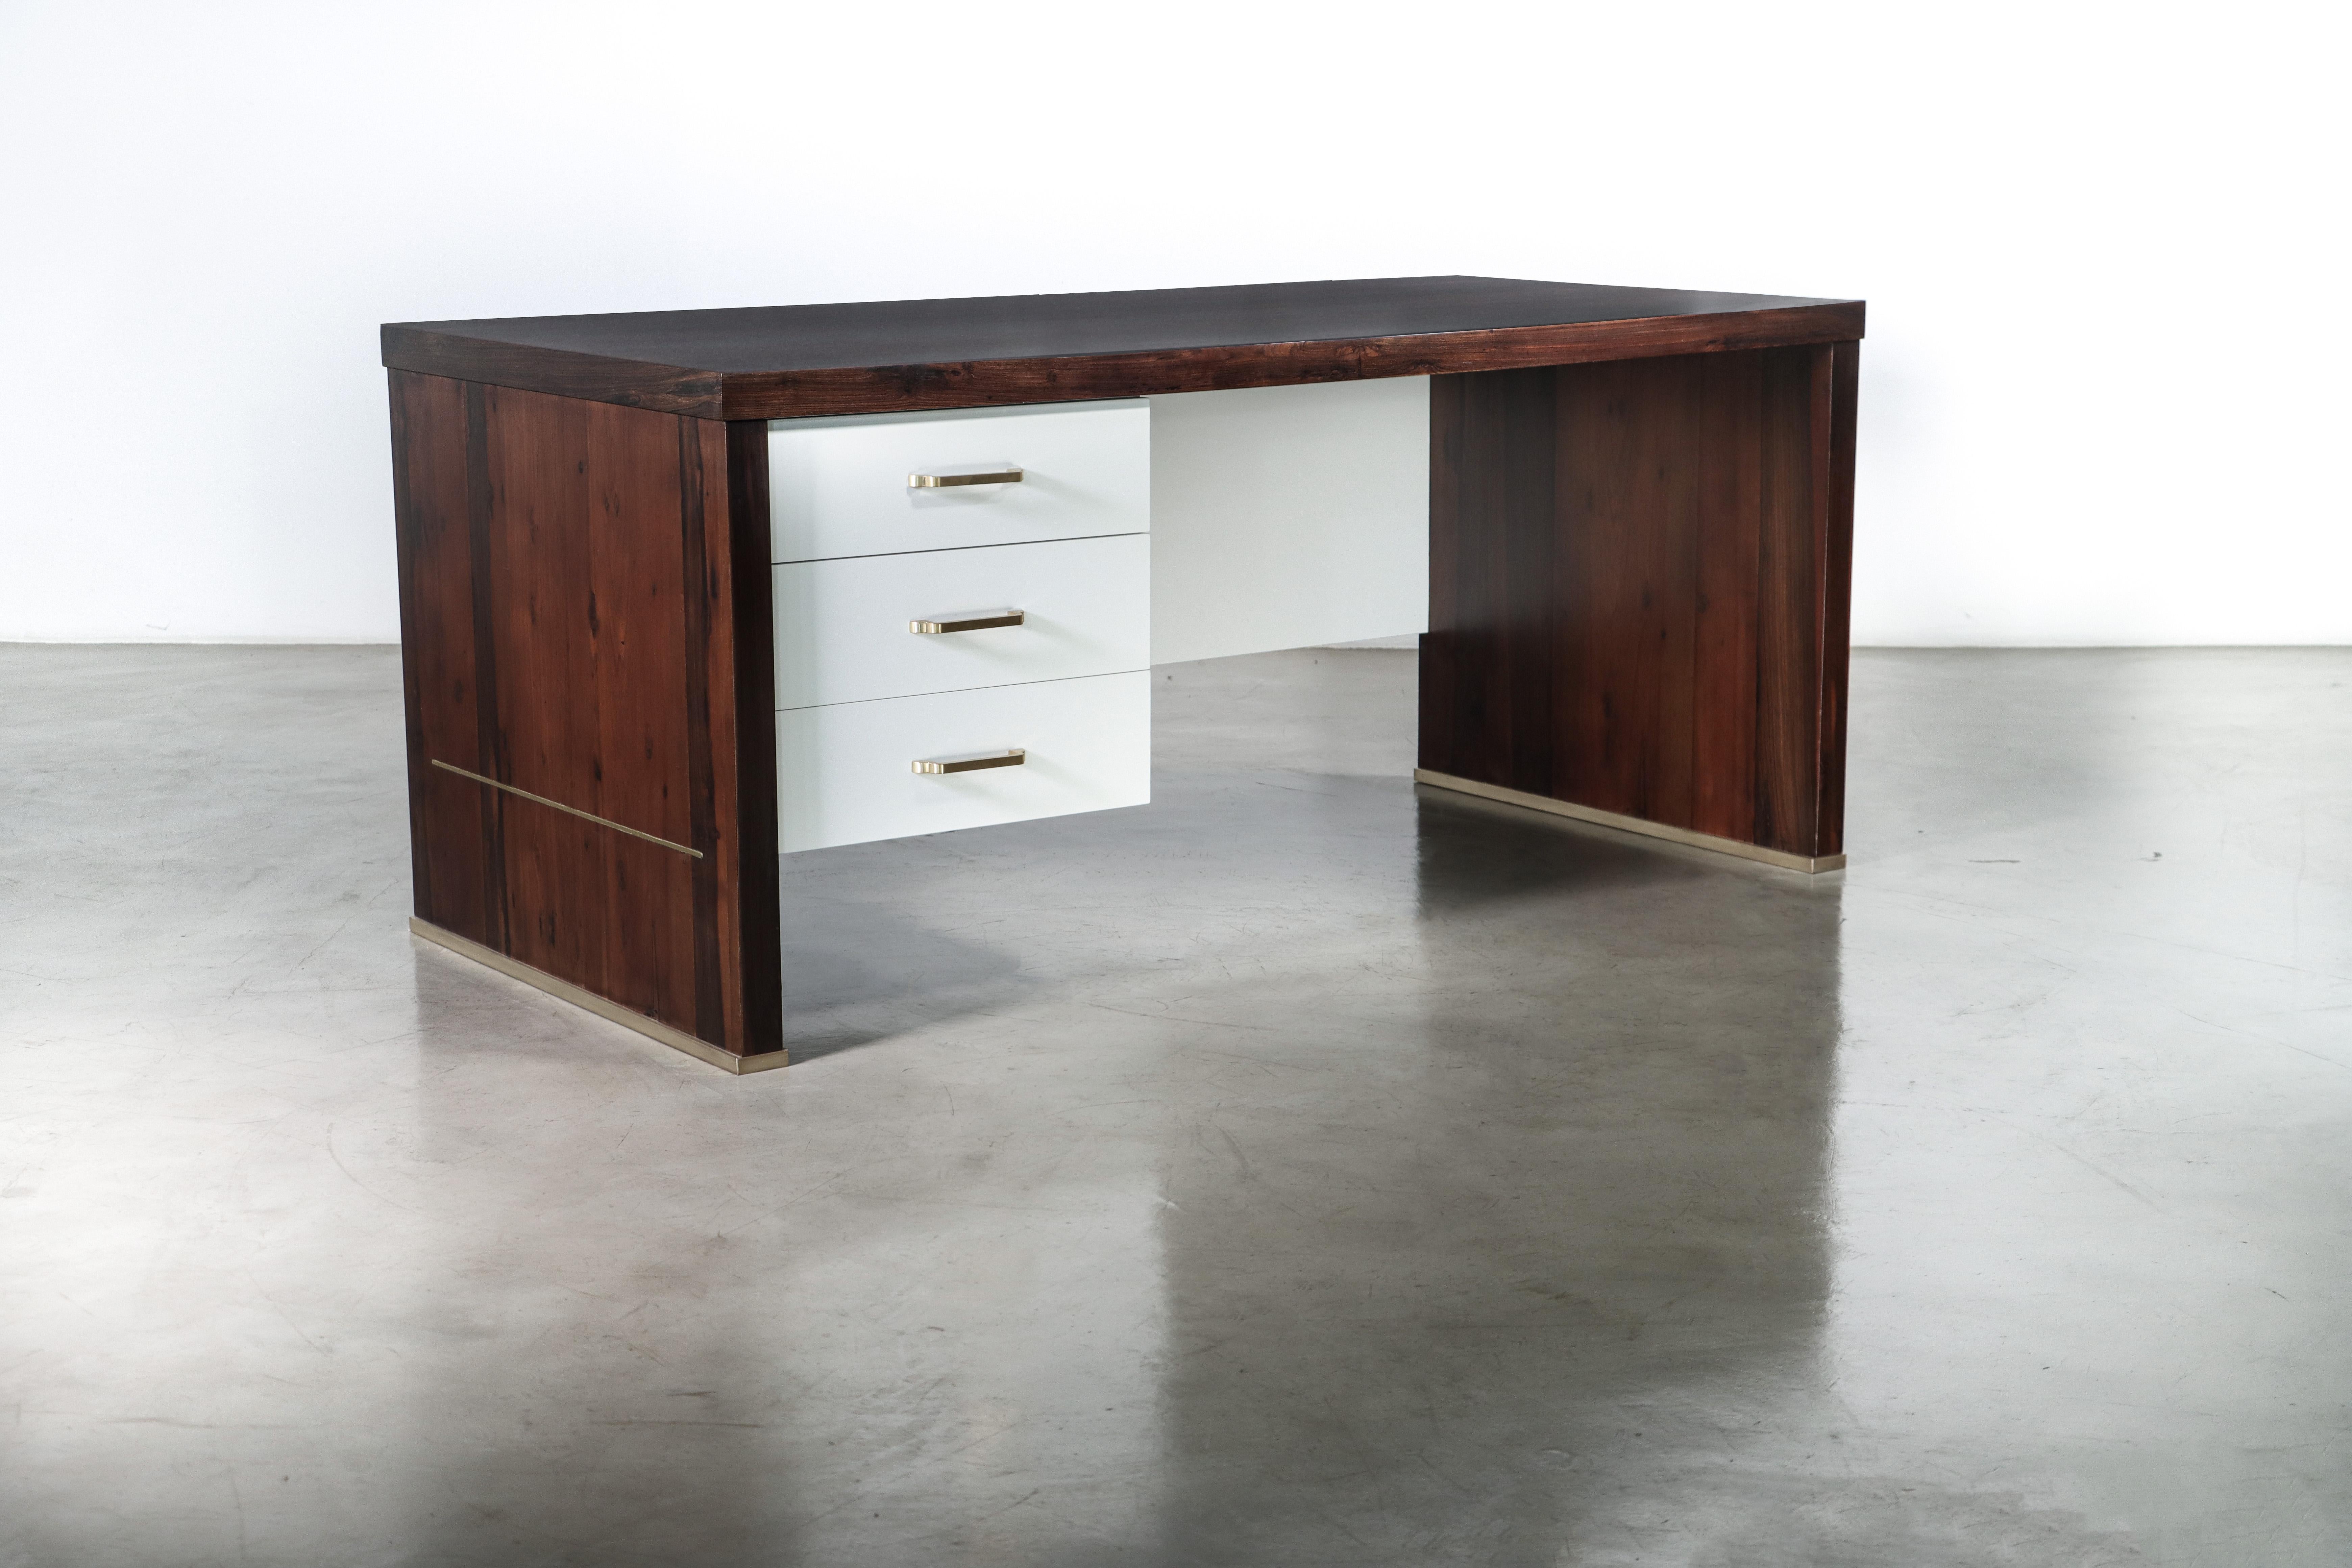 Lorenzo Moderner Schreibtisch mit Schubladen aus argentinischem Palisander und Bronze von Costantini

Maße: 66